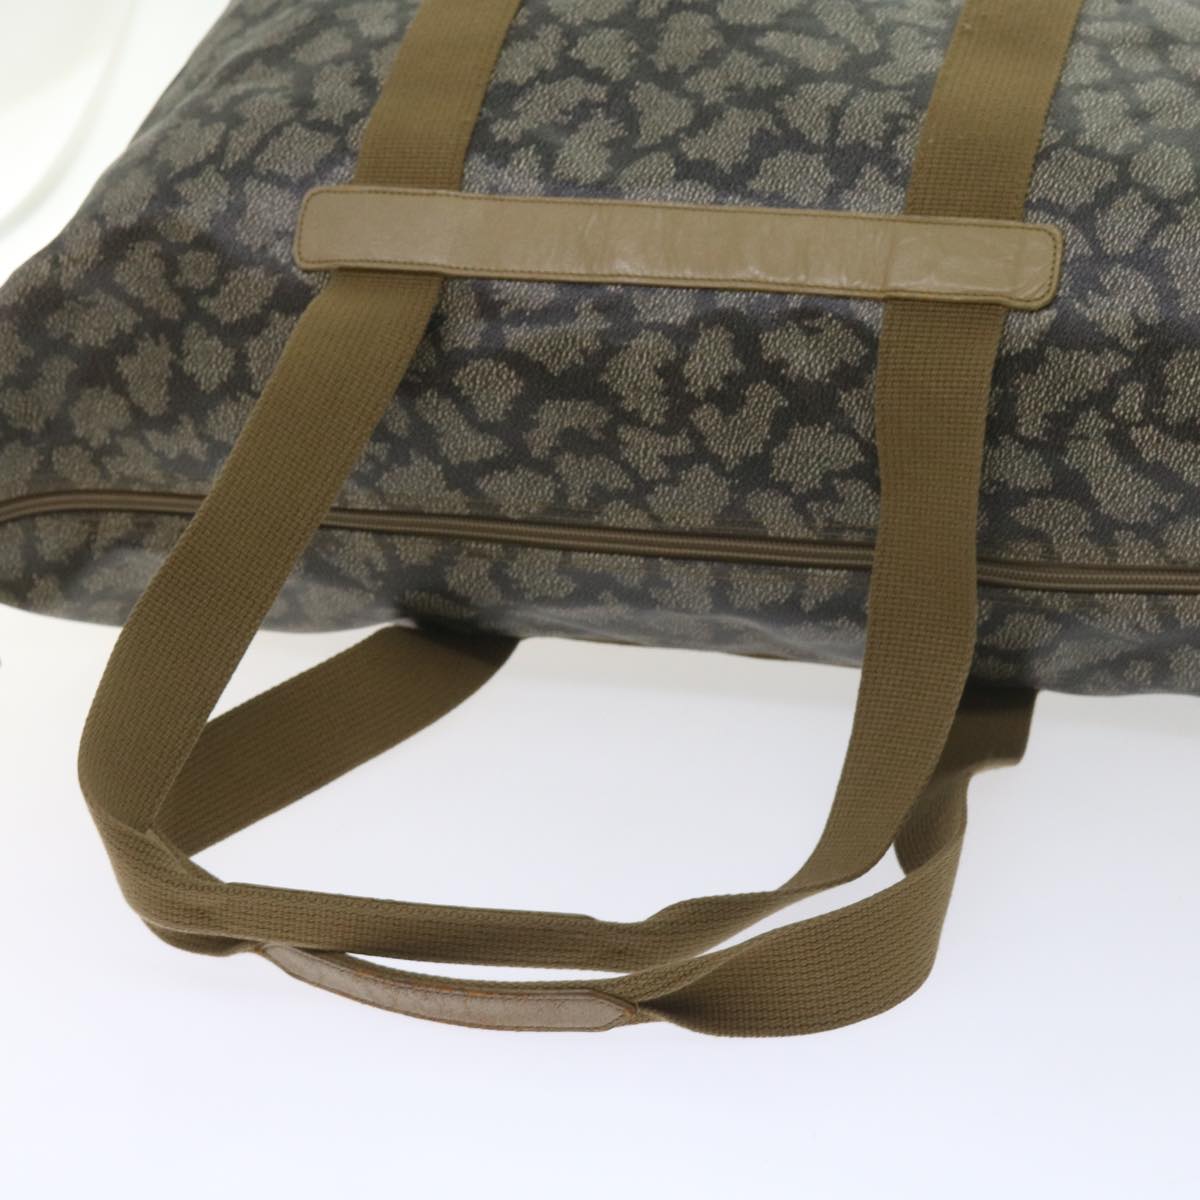 SAINT LAURENT Shoulder Bag PVC Leather Gray Auth bs8707